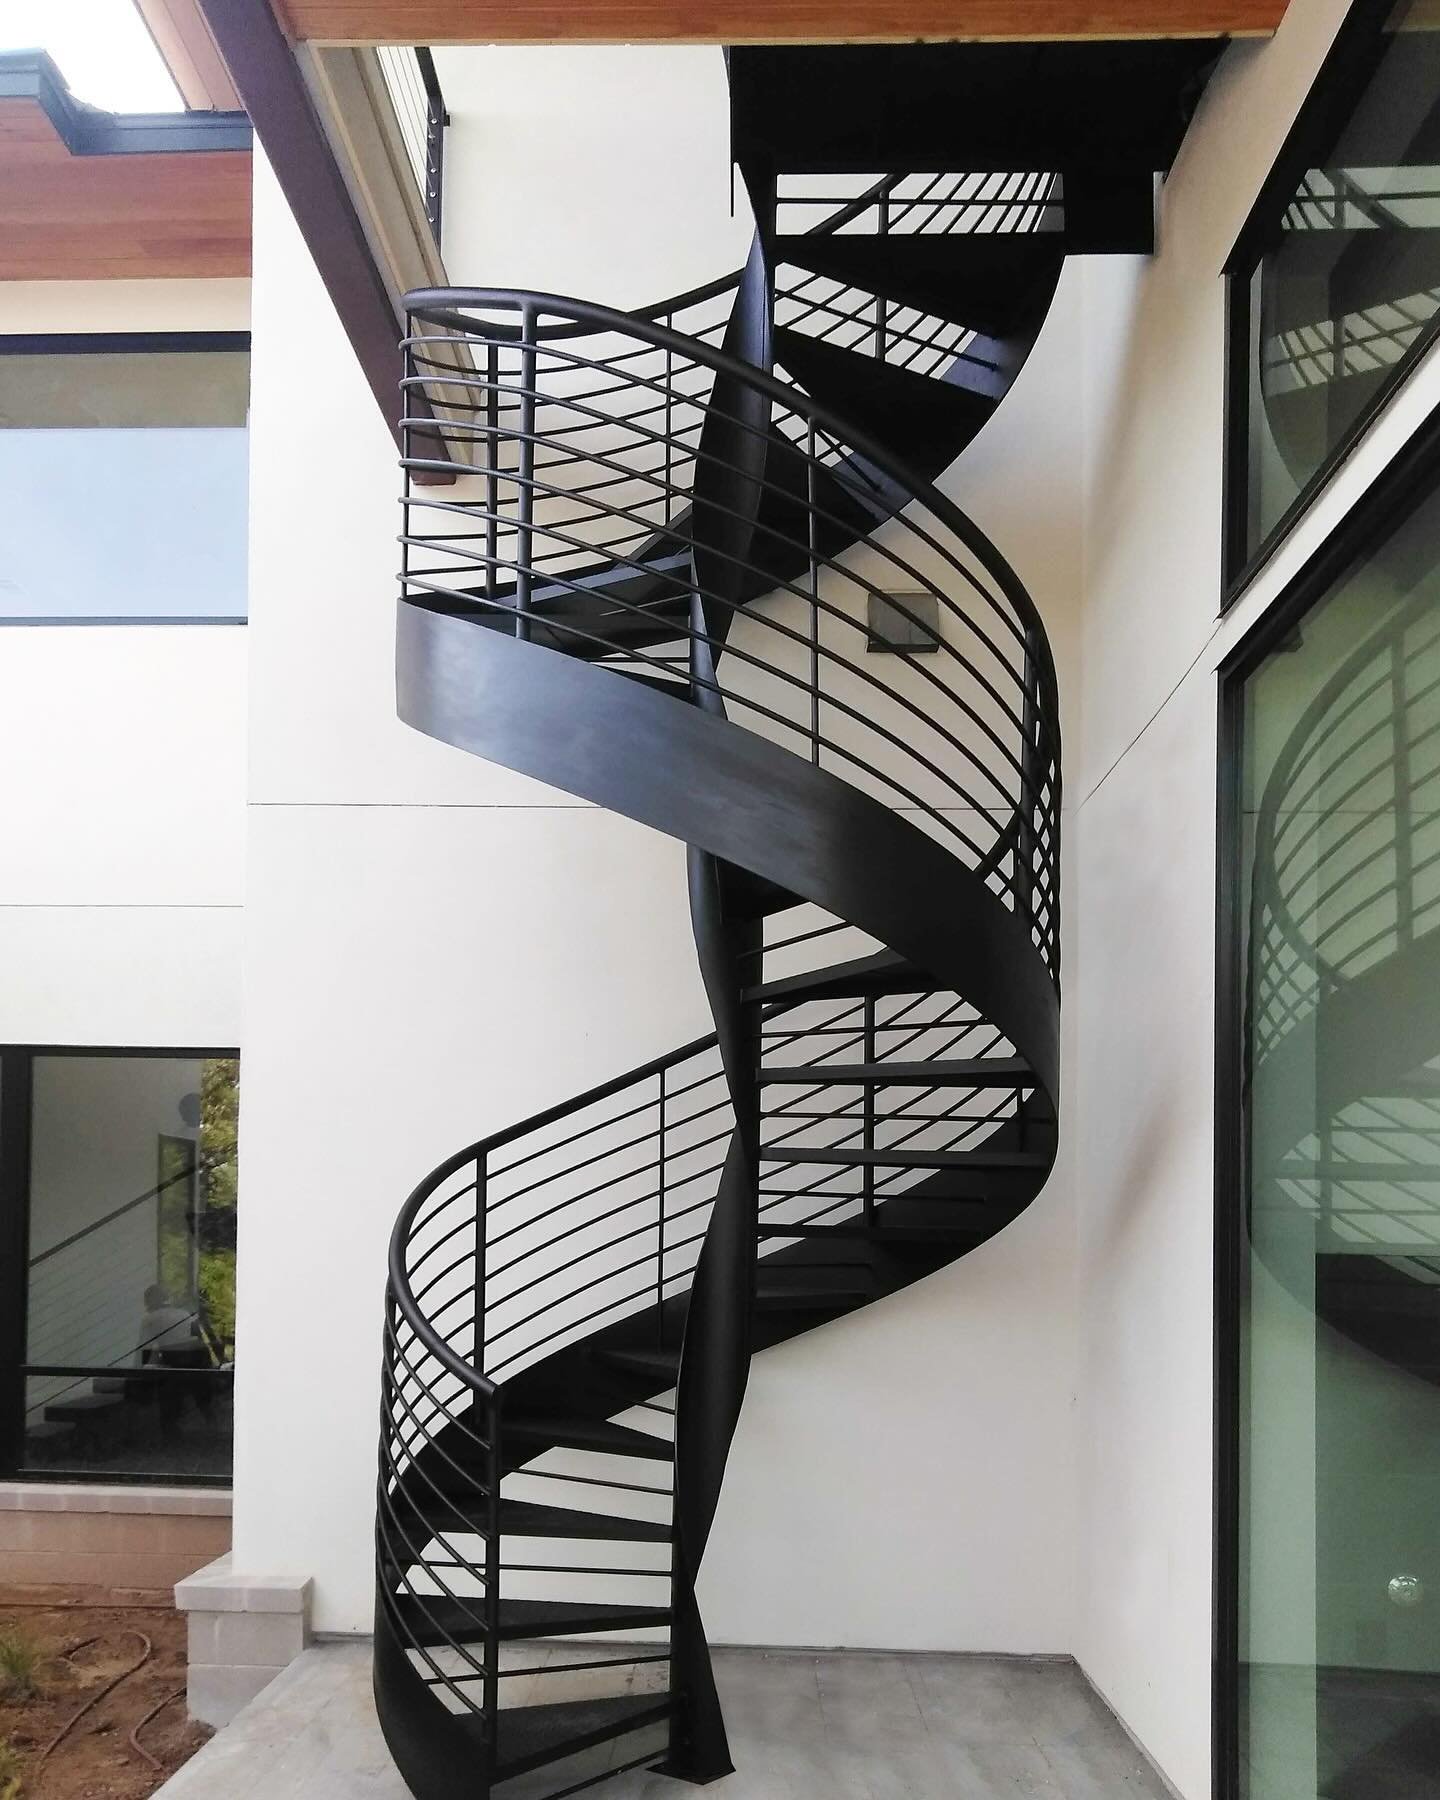 Gorgeous Spiral Staircase ✨
⏭️ Exterior and Interior Design 

.
.
.

#stairrailing #staircaserail #metalrailingdesign #metalrailing #spiralstaircase #homeinspo #irondoors #modernirondoors #customdoor #irondoor #exteriordoors #doors #doorsofinstagram 